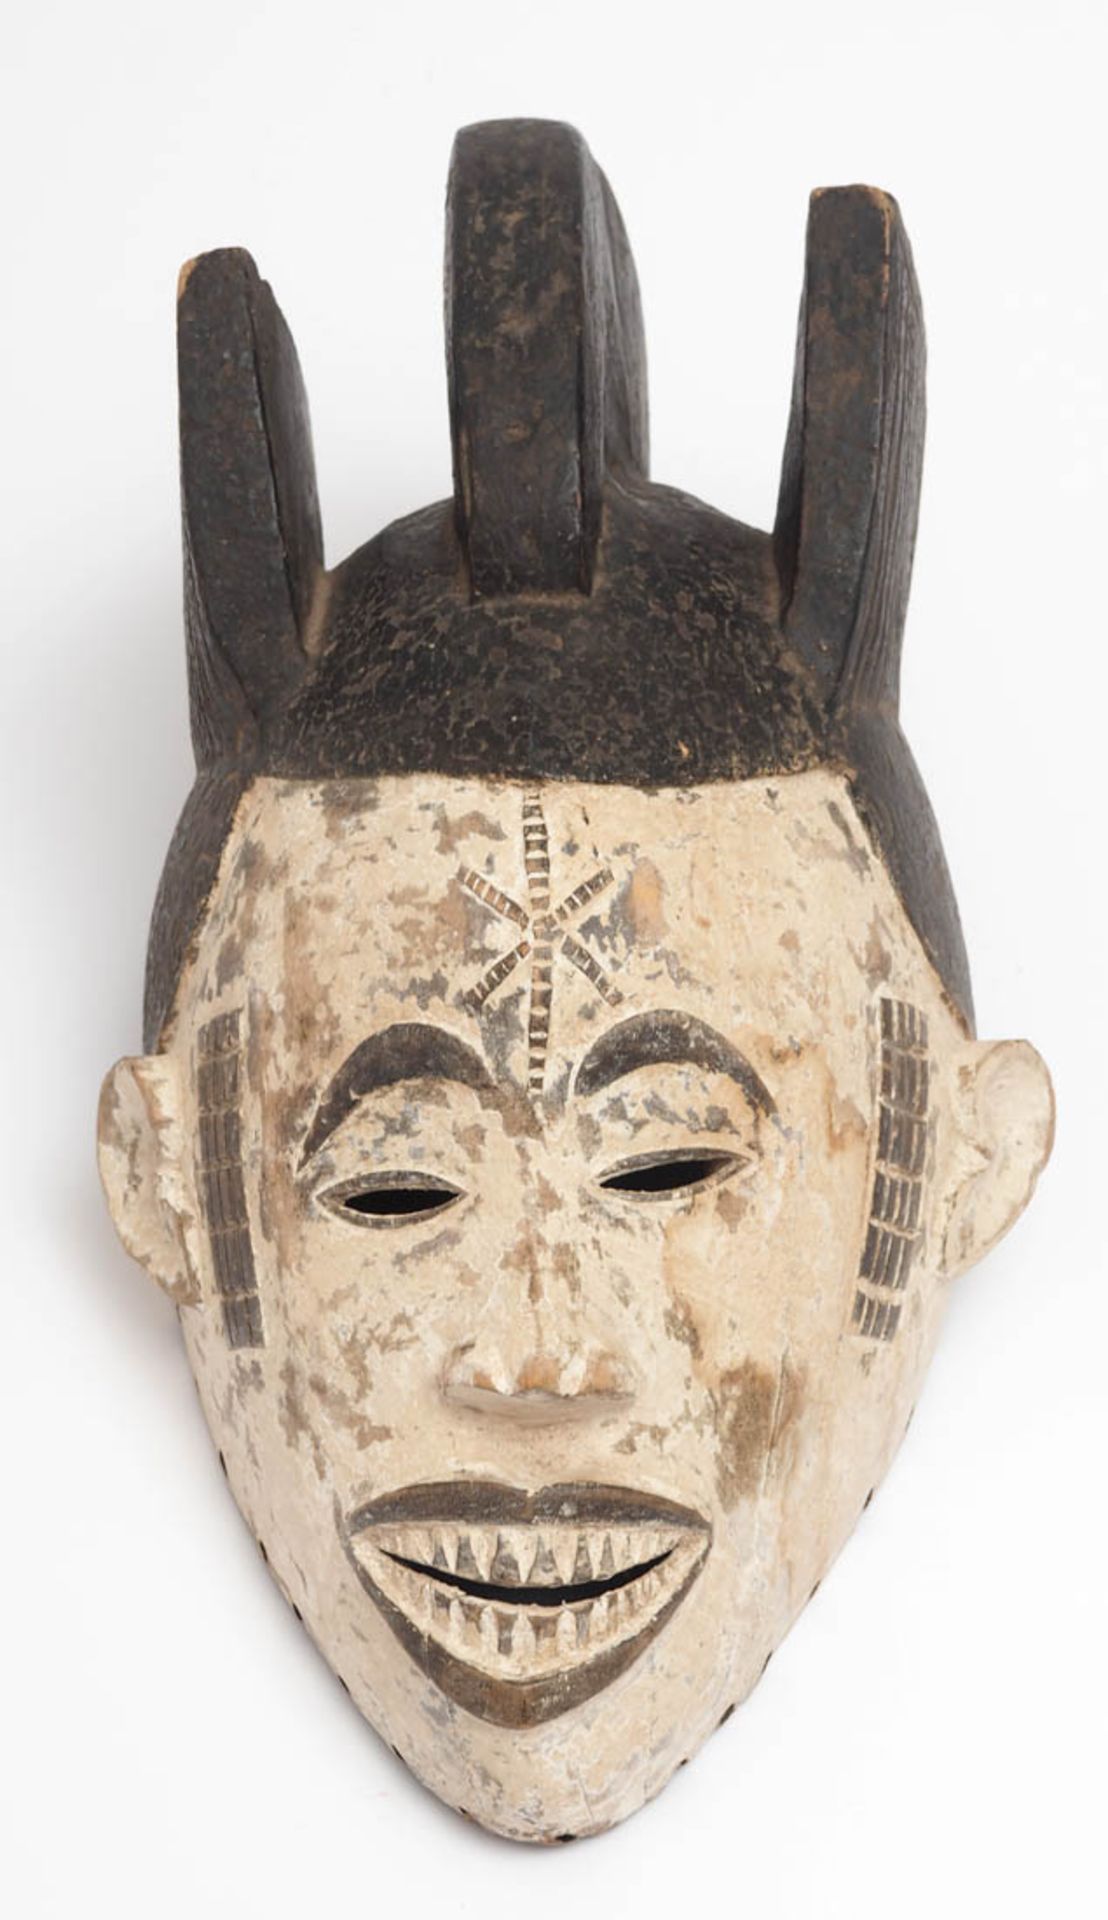 Maske des Mmwo-Geheimbundes, Ibo, Nigeria Holz, geschnitzt, partiell geschwärzt bzw. weiß gekalkt. - Bild 2 aus 5